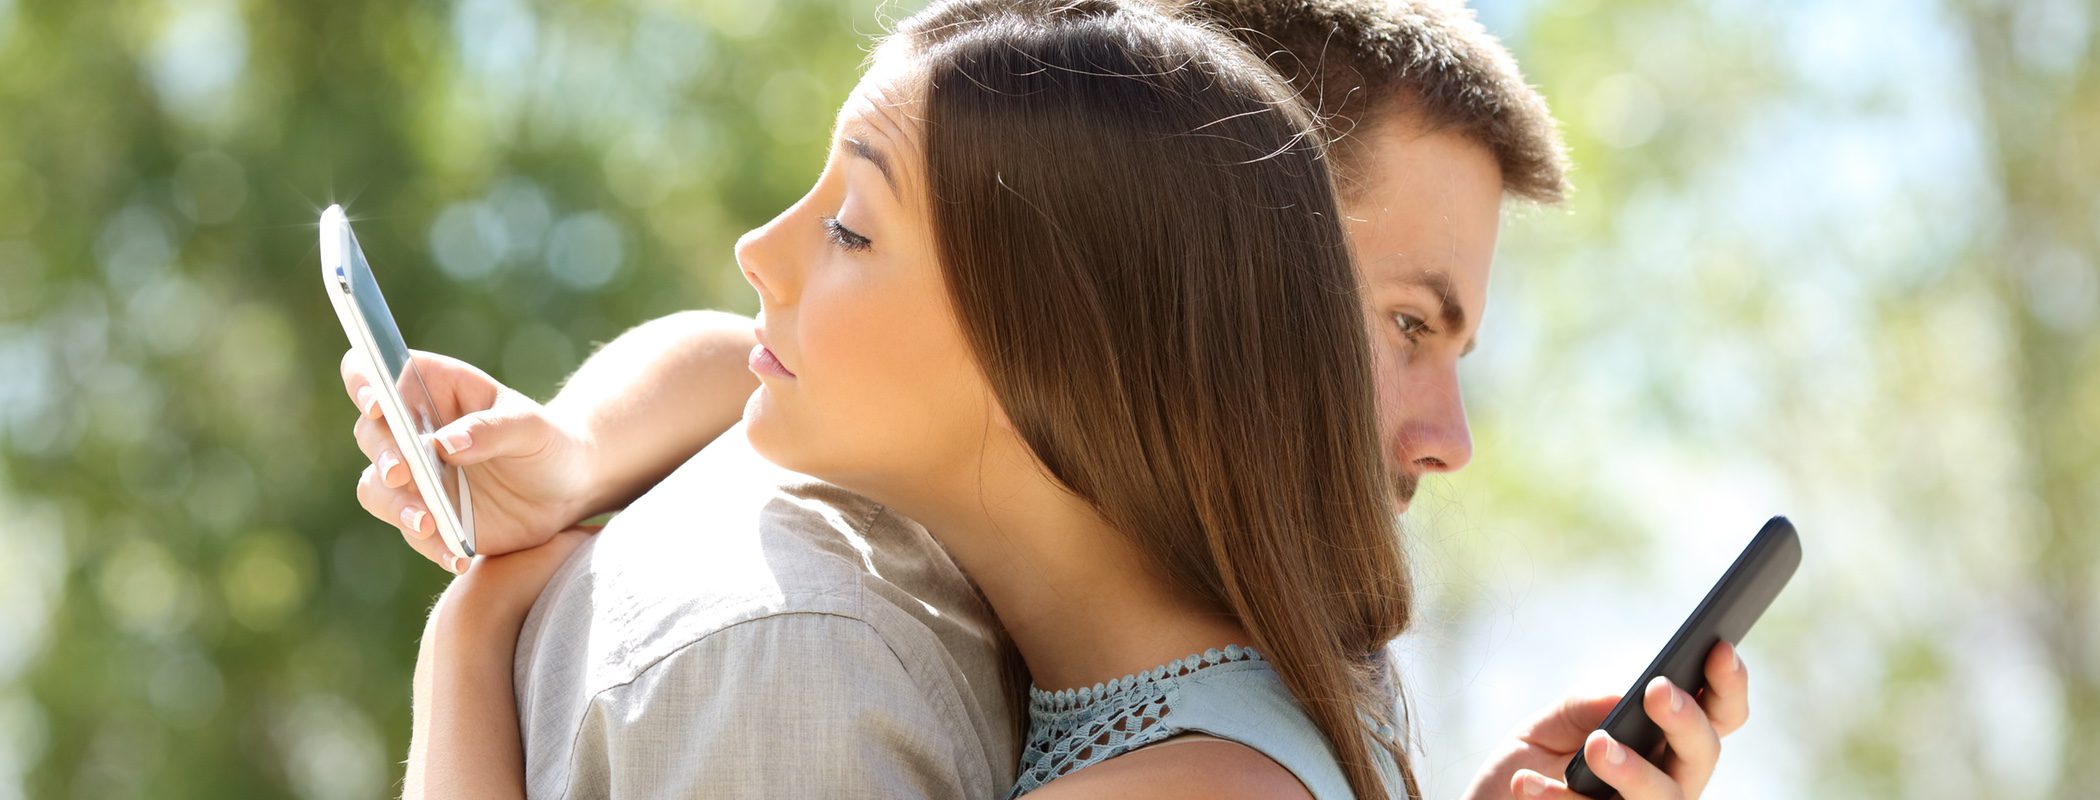 Test de infidelidad: ¿eres un infiel en potencia?